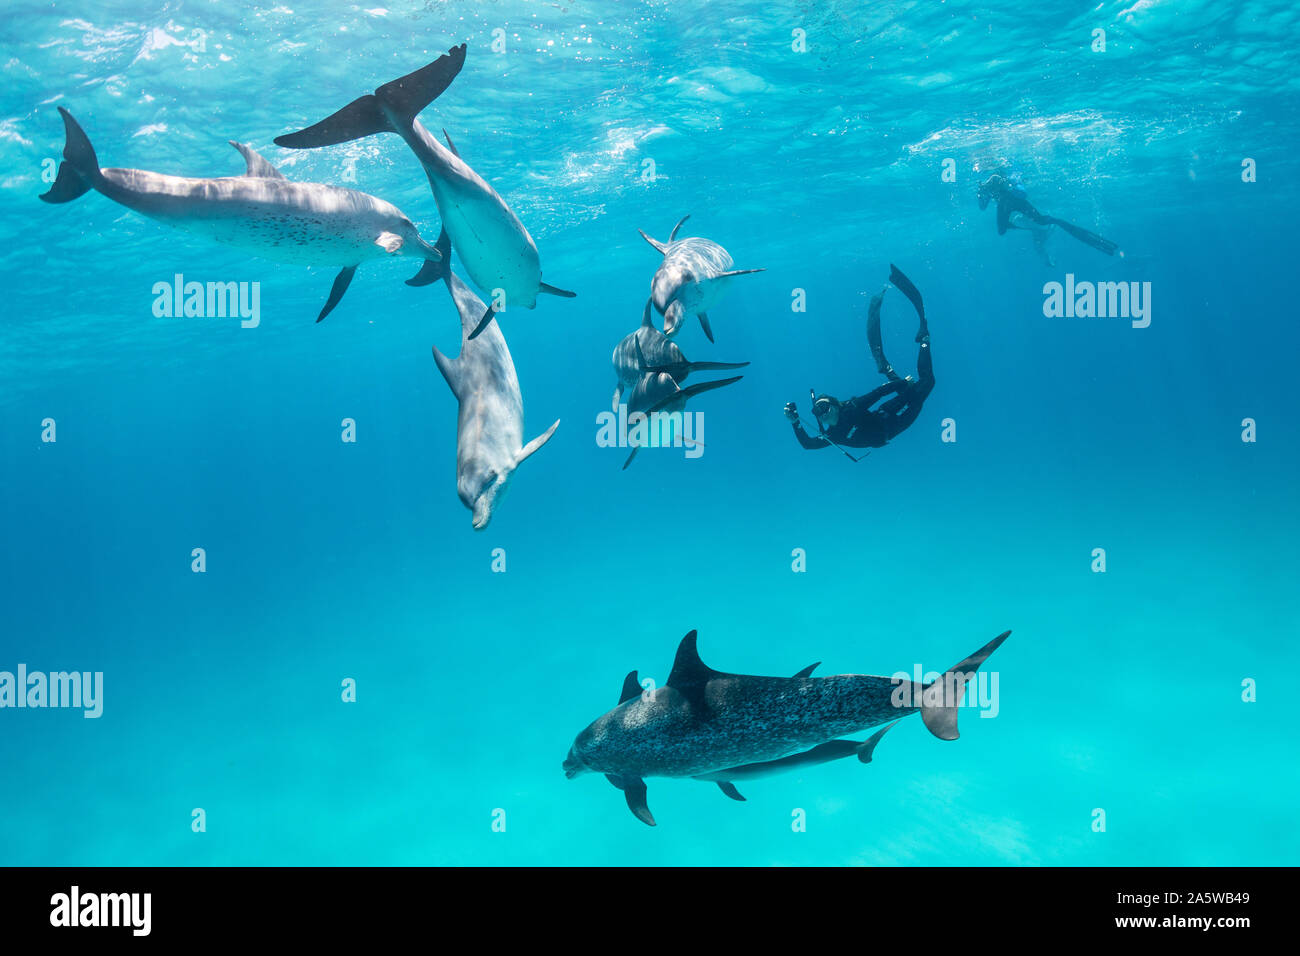 Ein Pod von Atlantic Spotted Dolphins (Stenella frontalis) schwimmt unter der Meeresoberfläche während ein freediverin Videoaufnahmen auf einem GoPro. Stockfoto